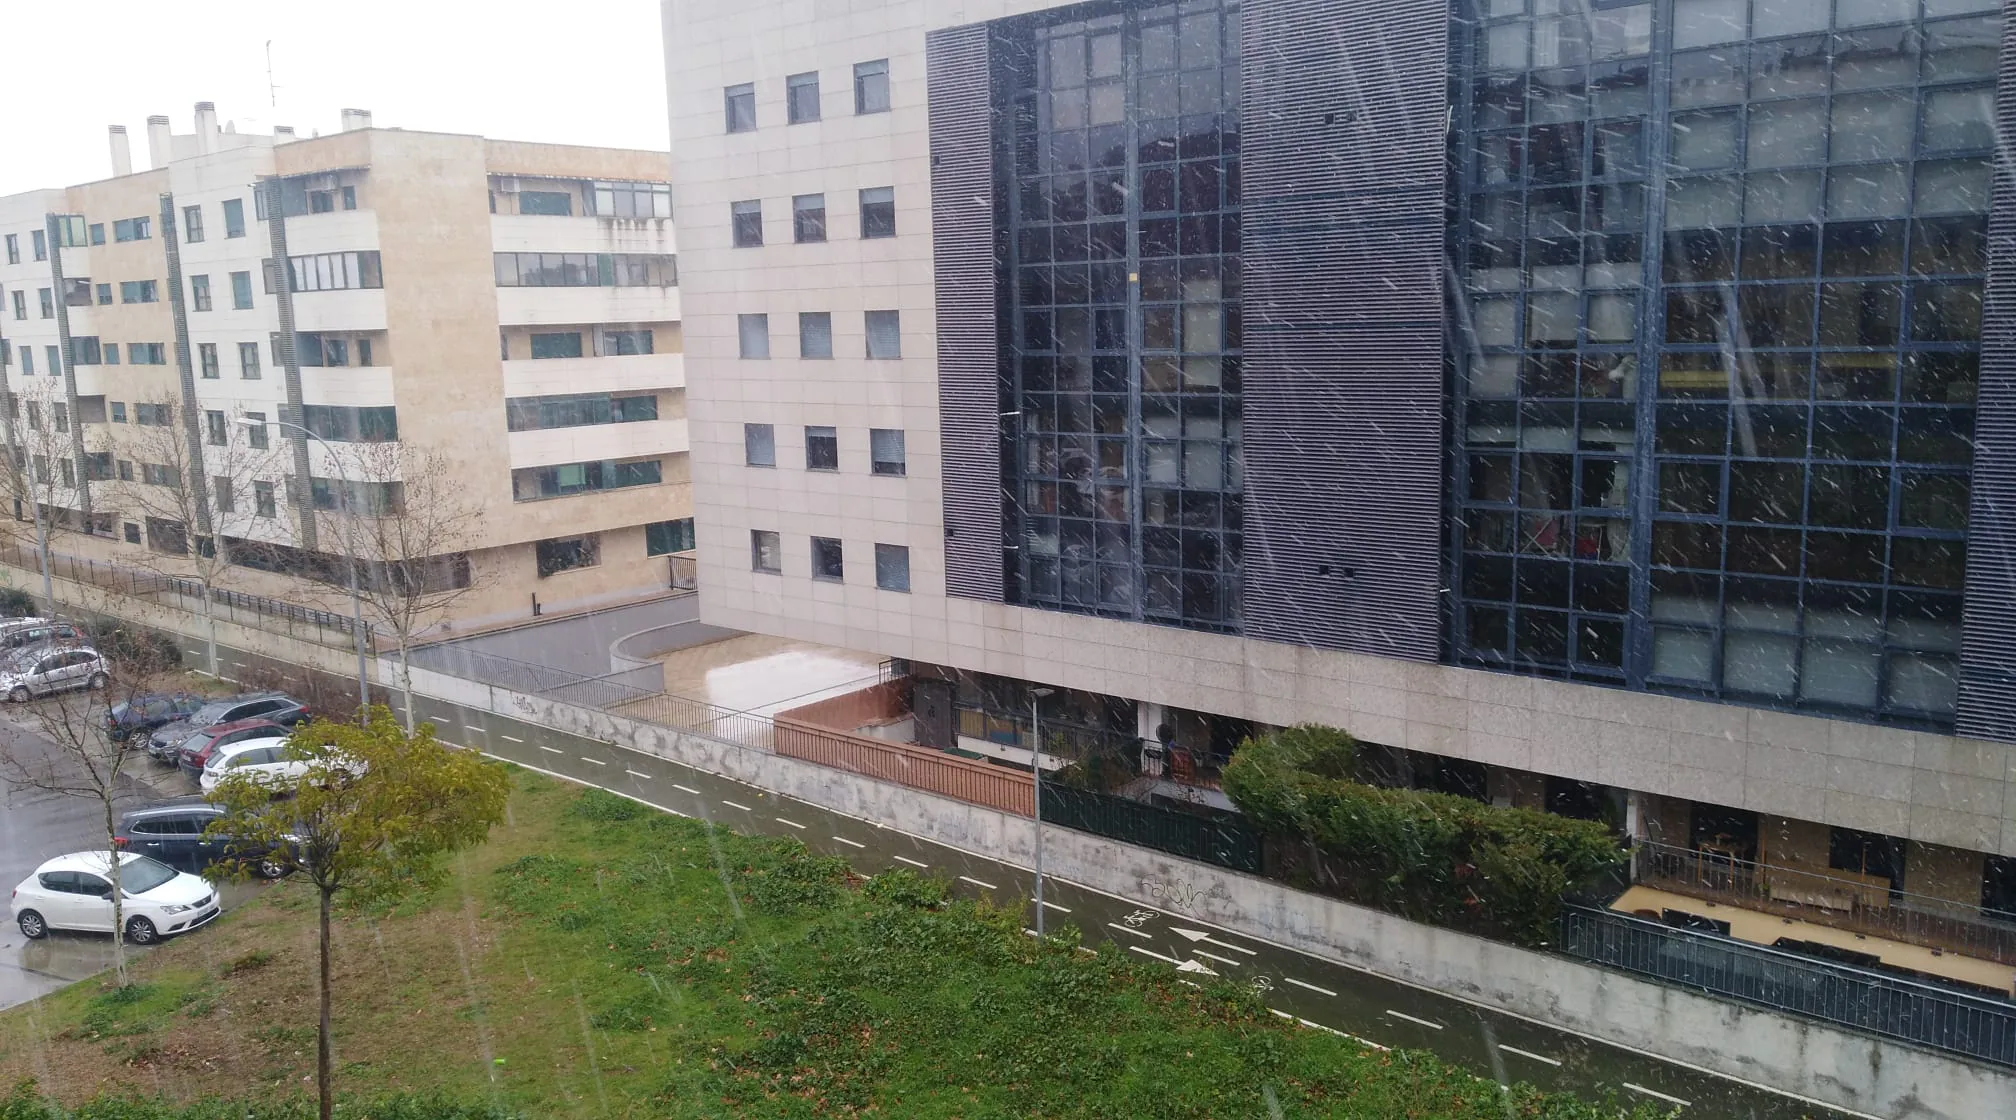 Nieve, sol y desplome del termómetro: carrusel de clima en el regreso de Salamanca al invierno